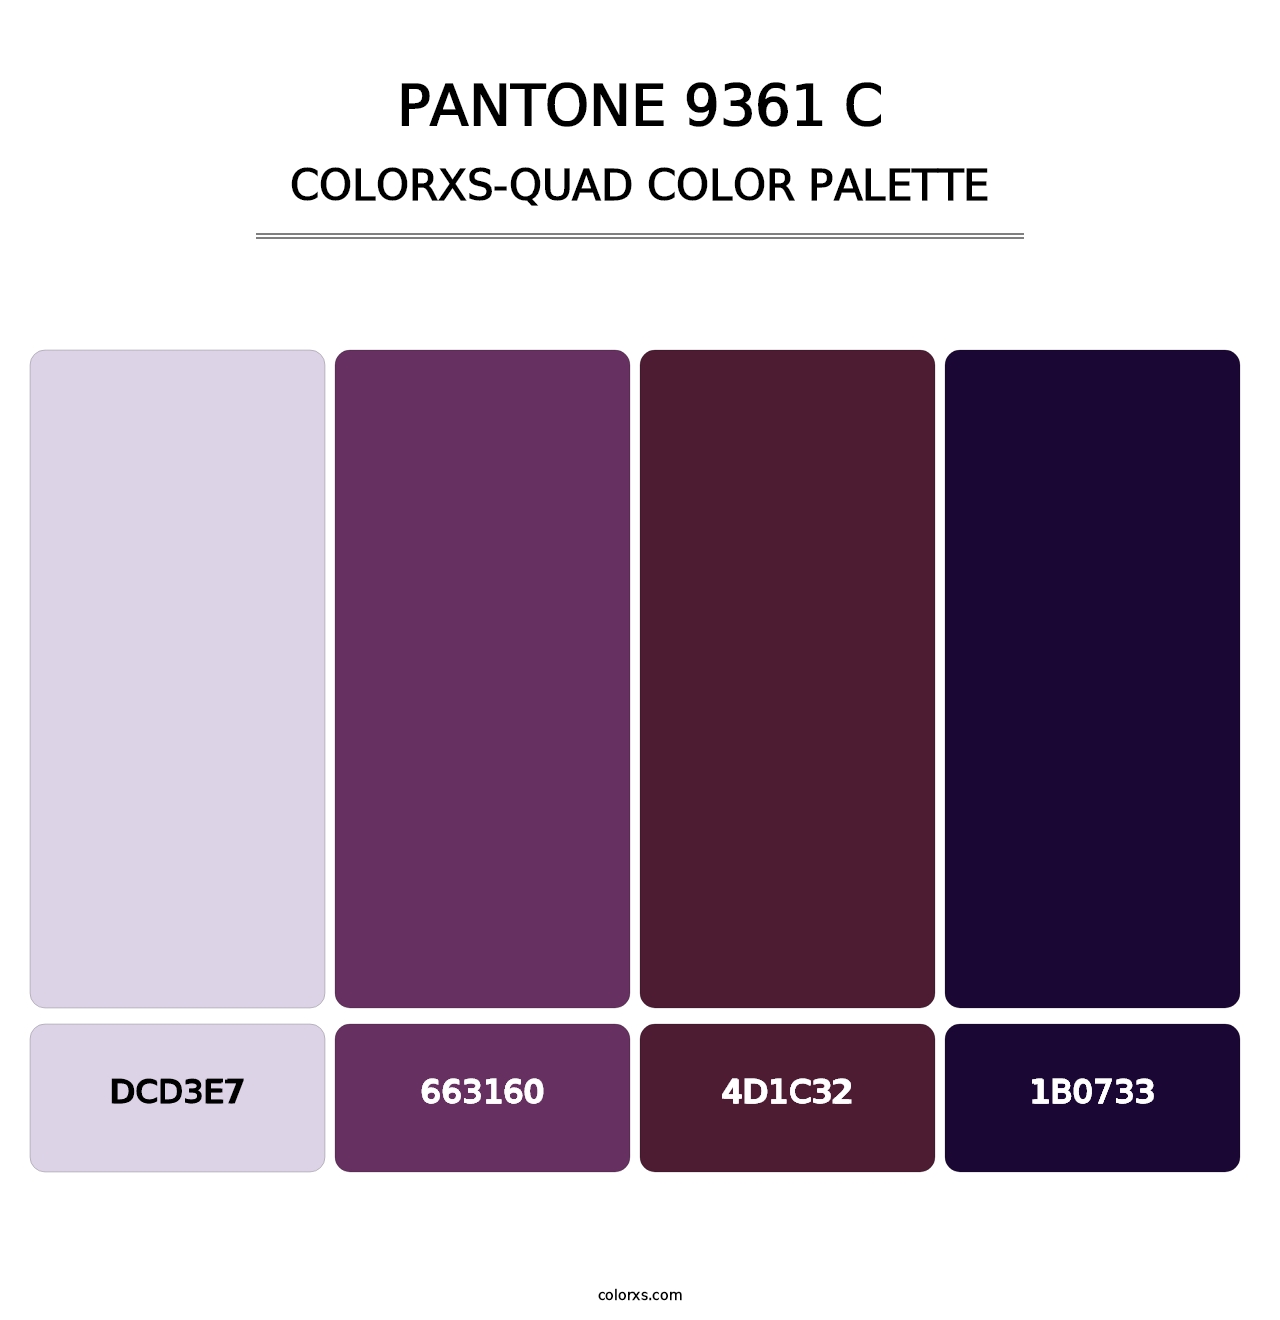 PANTONE 9361 C - Colorxs Quad Palette